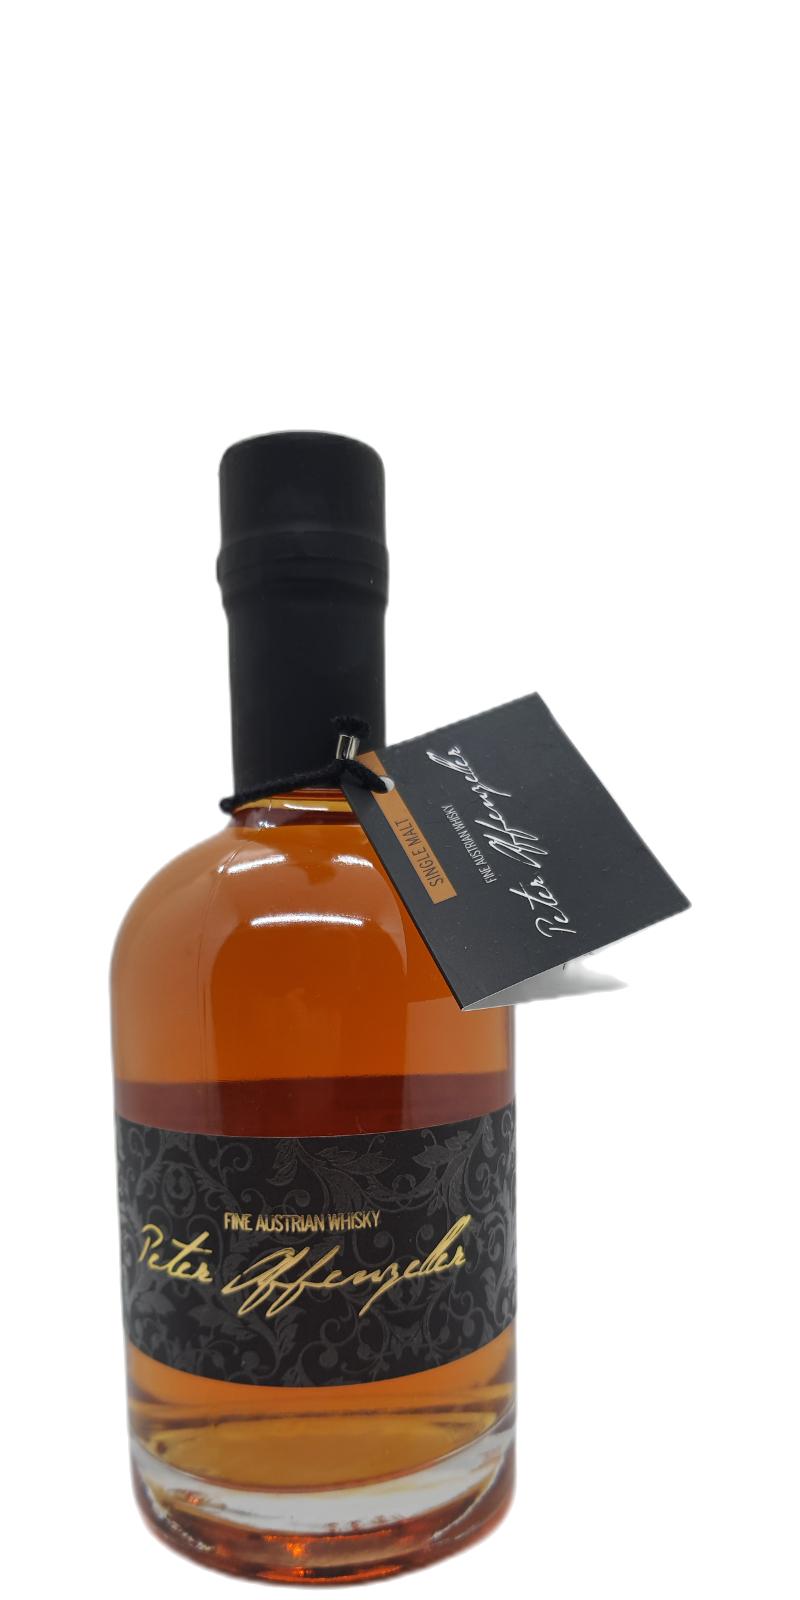 Peter Affenzeller 2015 Fine Austrian Whisky Oak Casks + Sherry Casks finish 3 Monate 42% 350ml